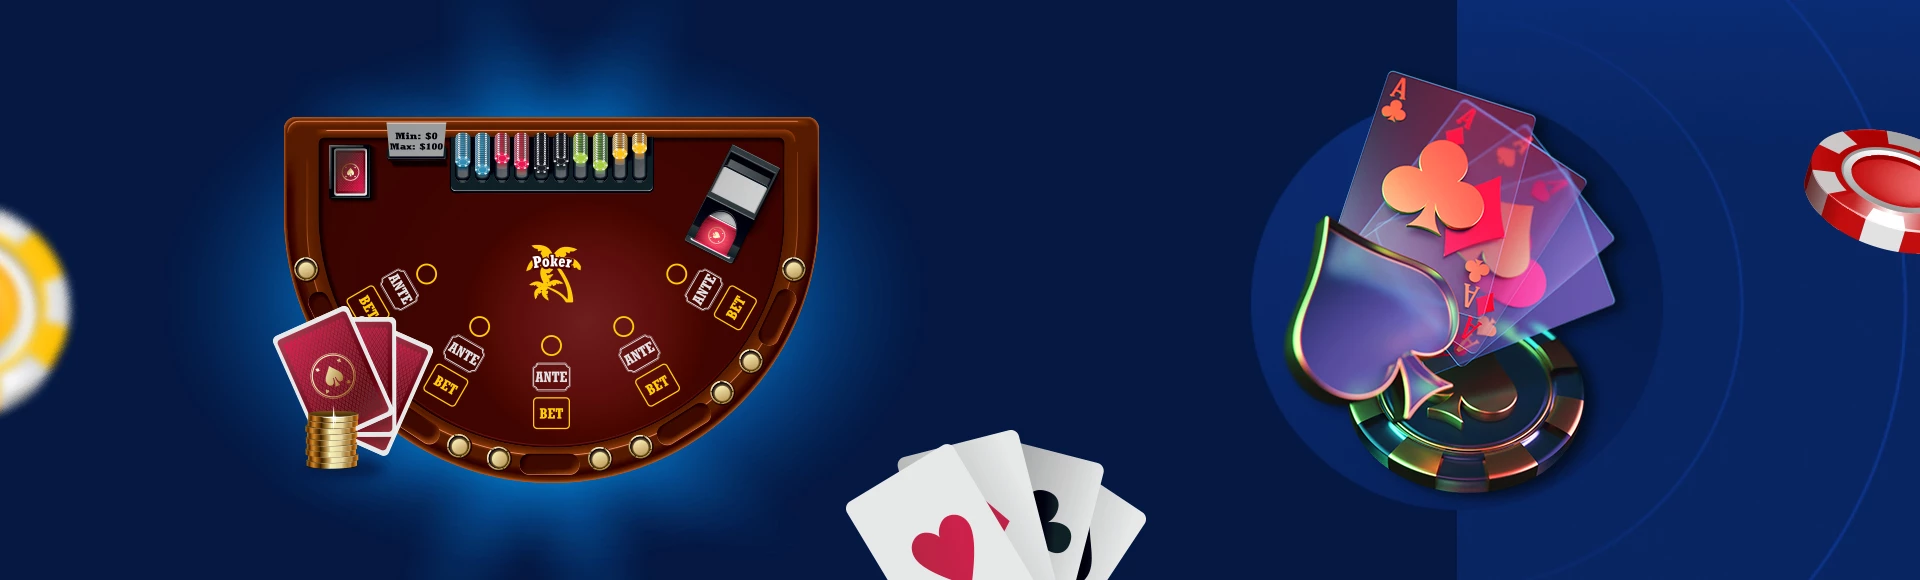 pokergids door CasinoGenie design image